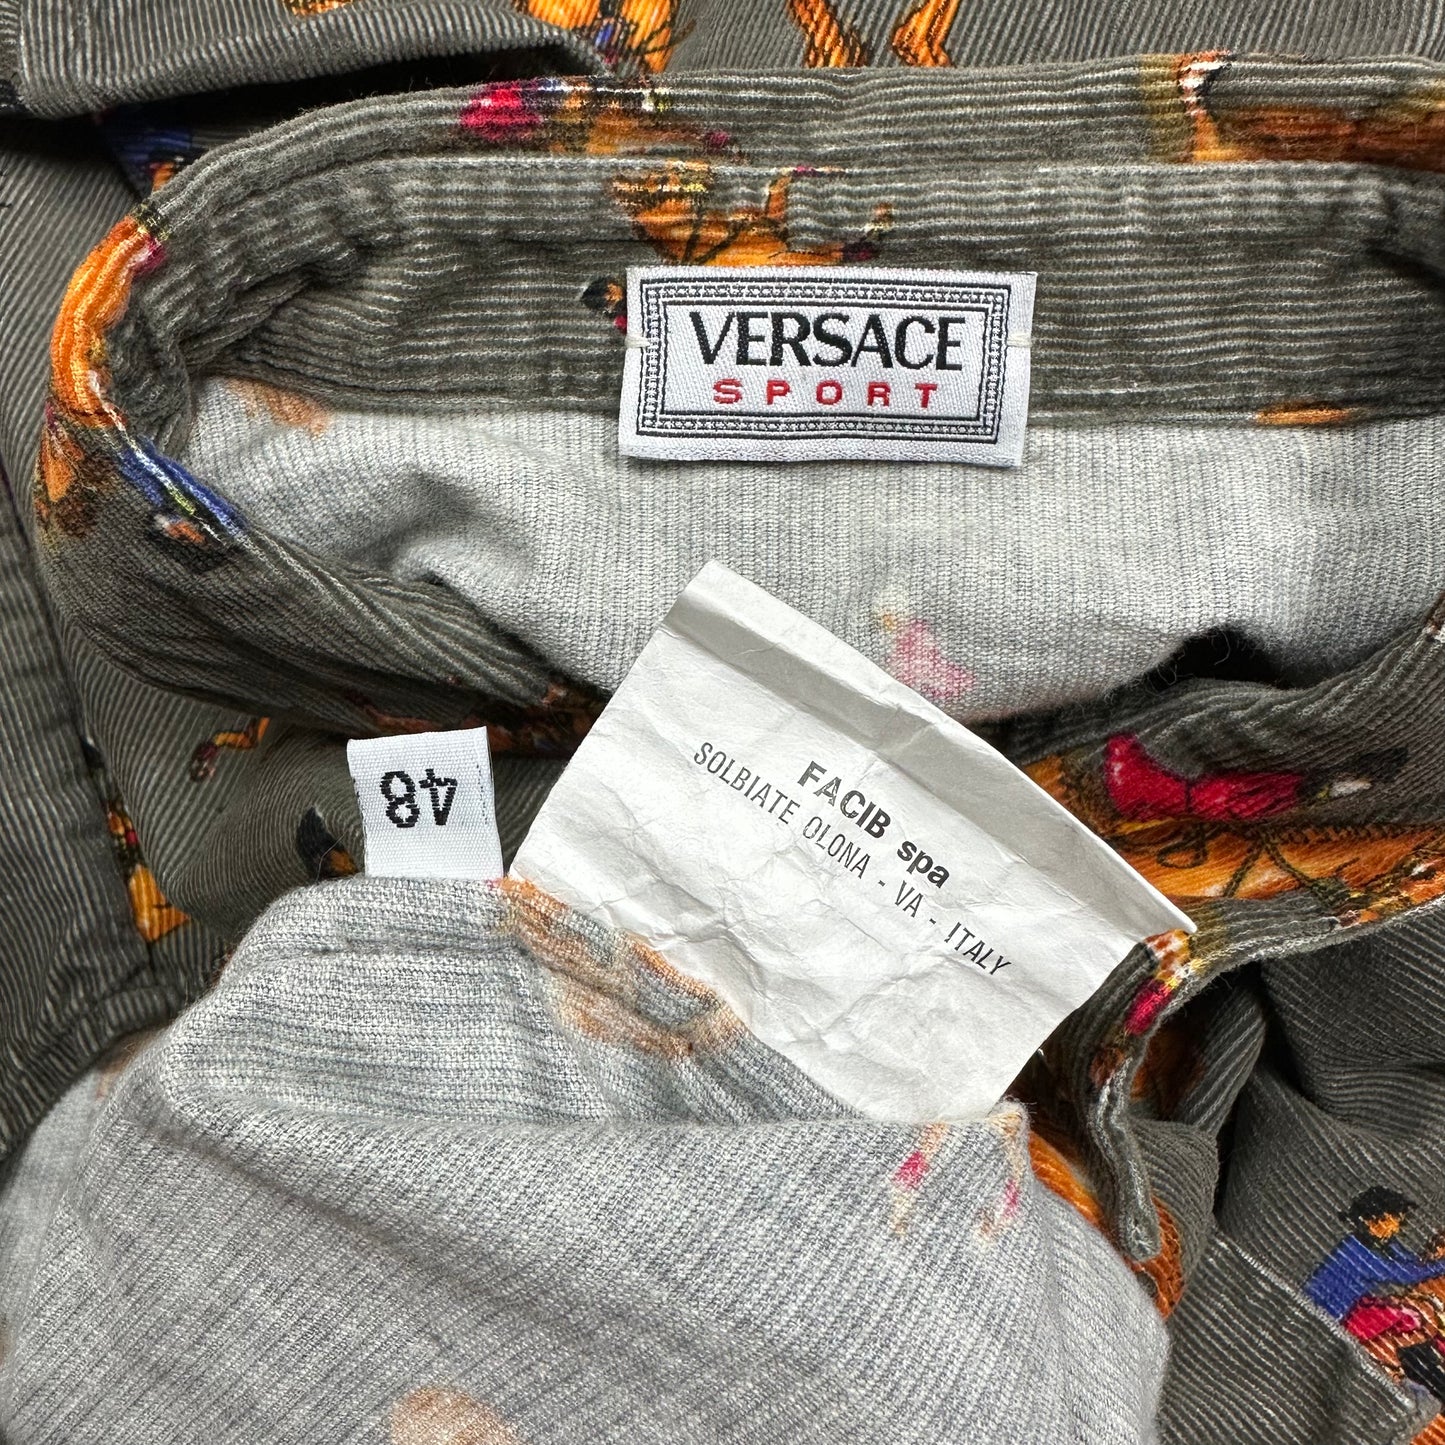 Versace Sport 90’s Corduroy Horses Double Pocket Shirt - L